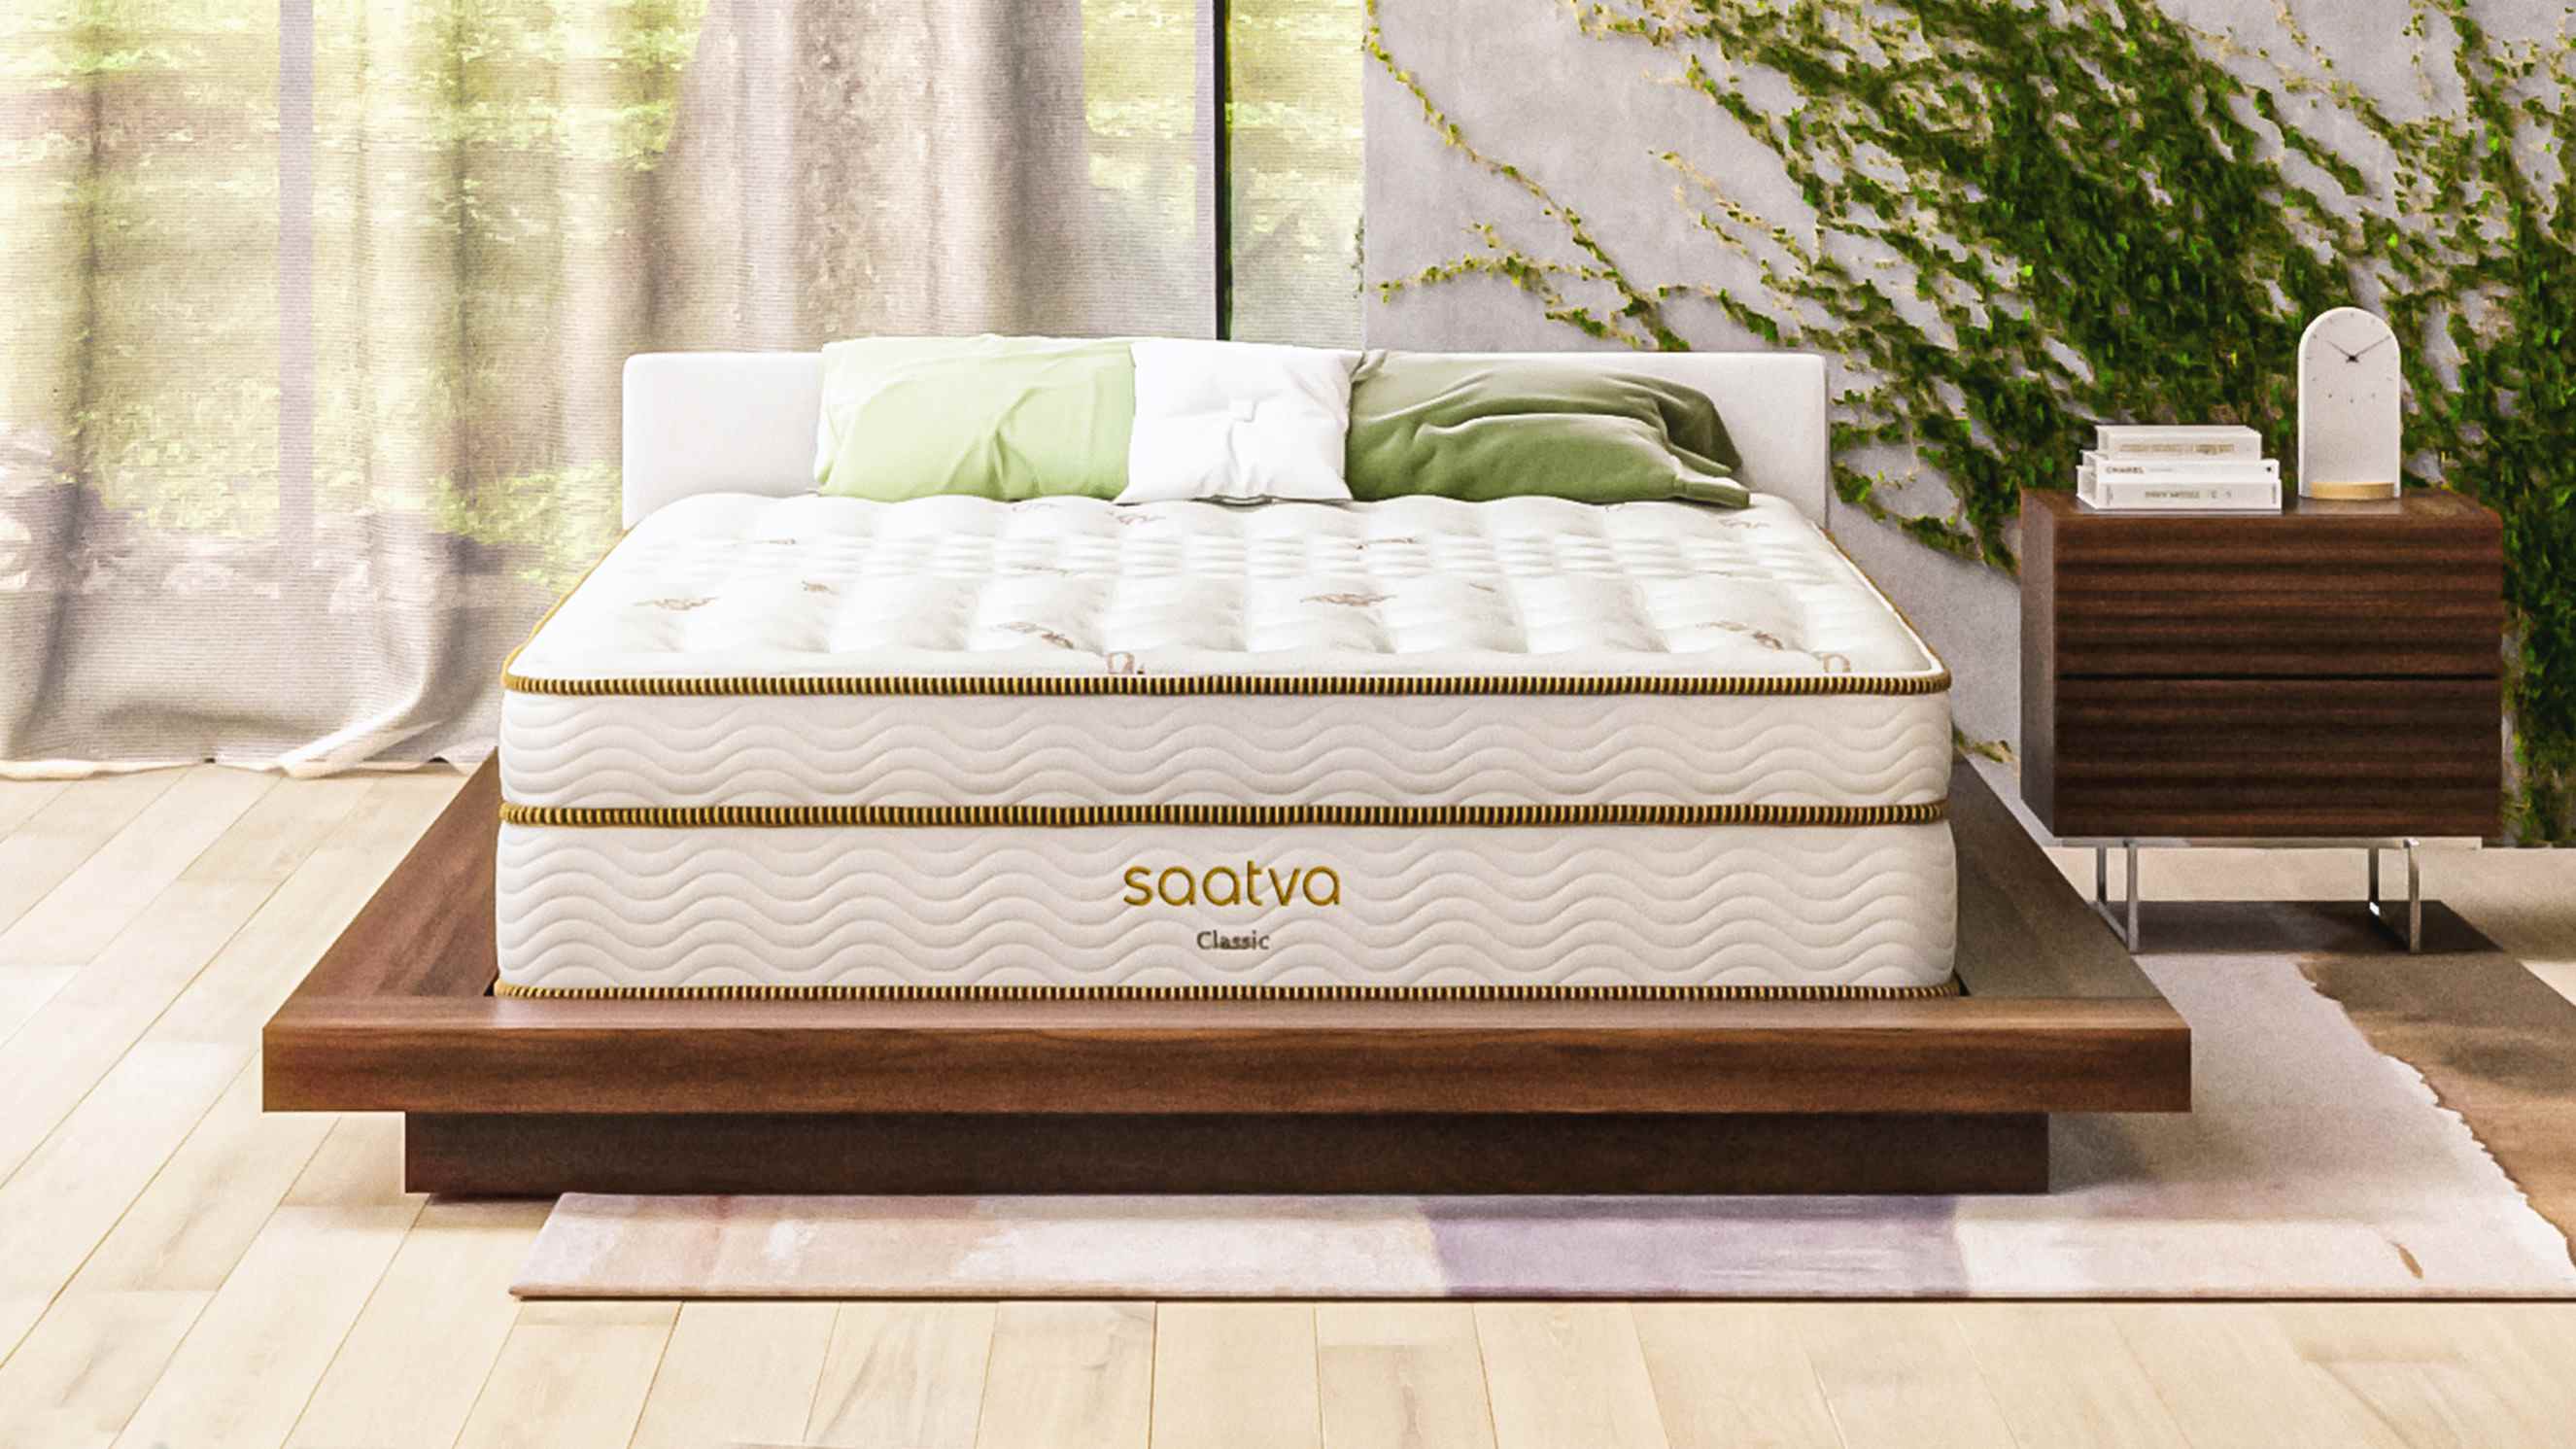 Le matelas Saatva Classic présenté sur un cadre de lit en bois clair dans une chambre élégante